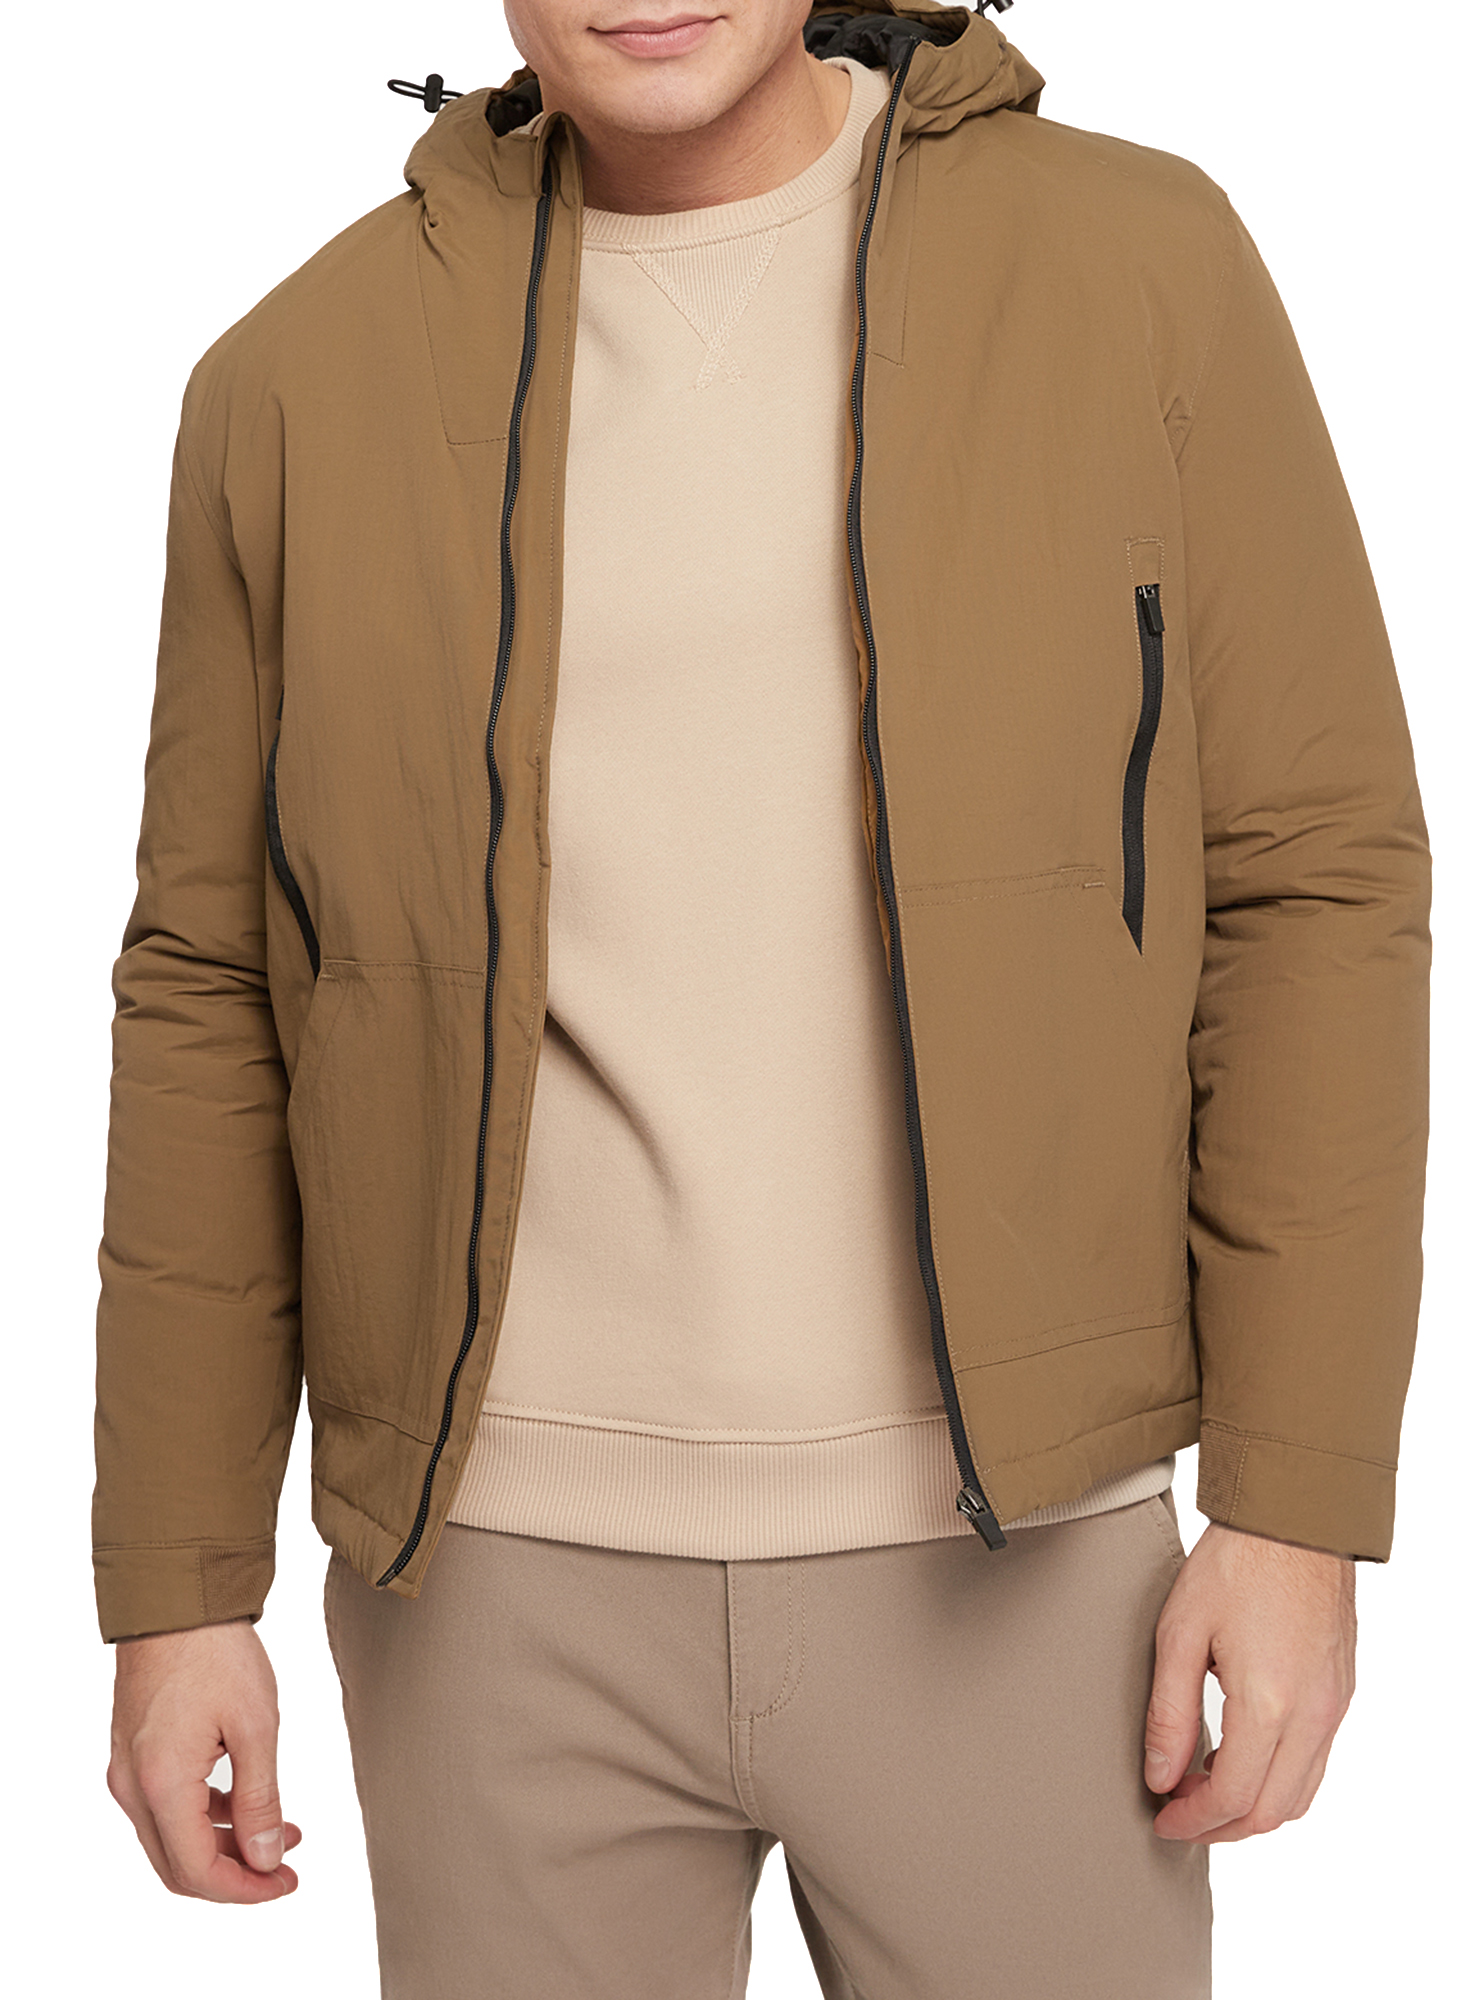 Куртка мужская oodji 1B515003M коричневая S